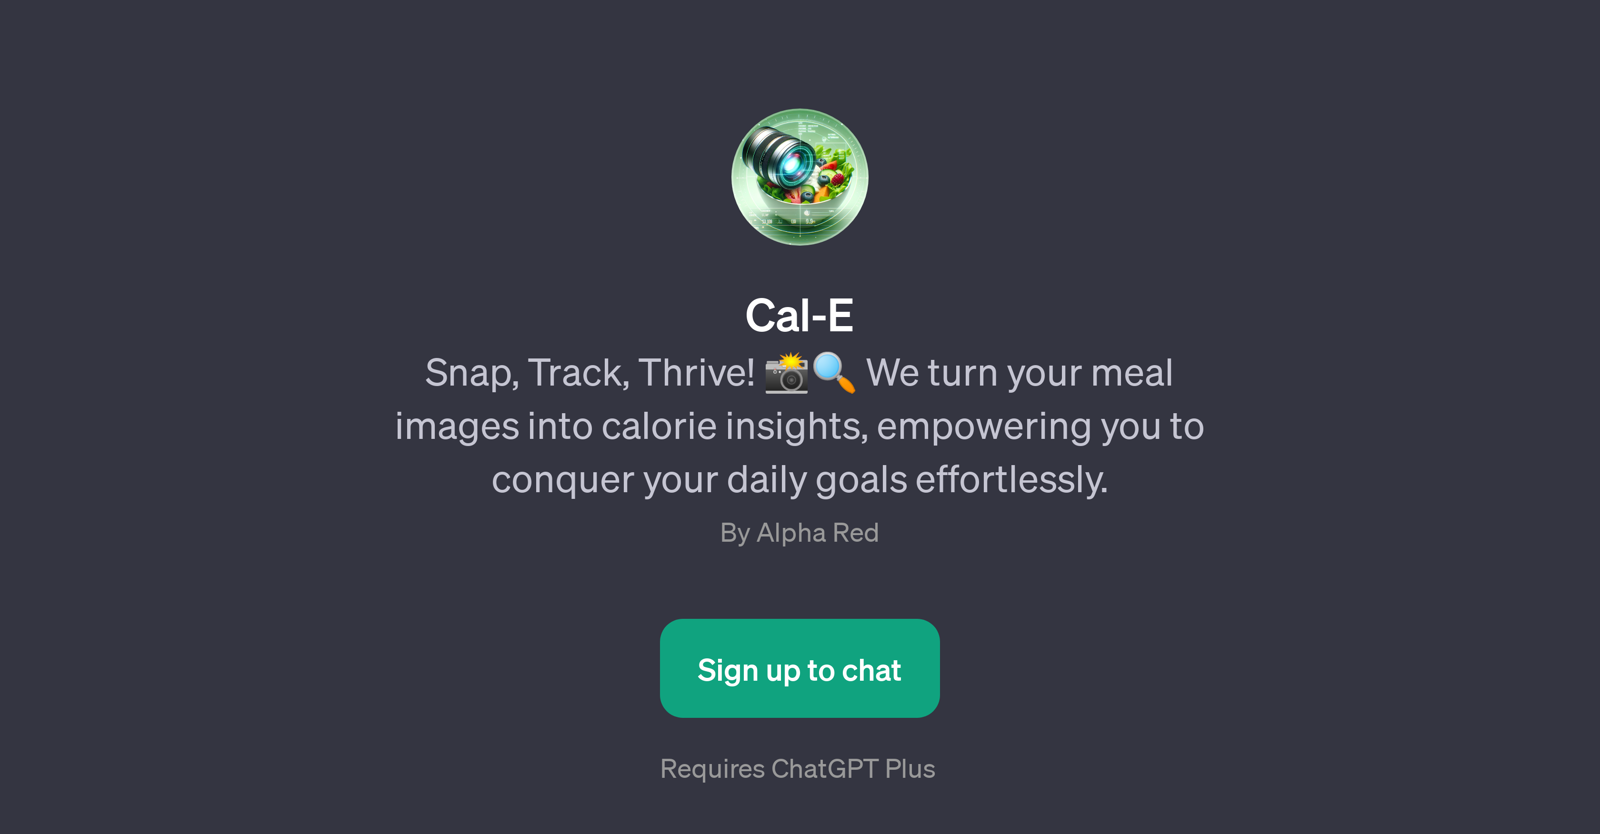 Cal-E website